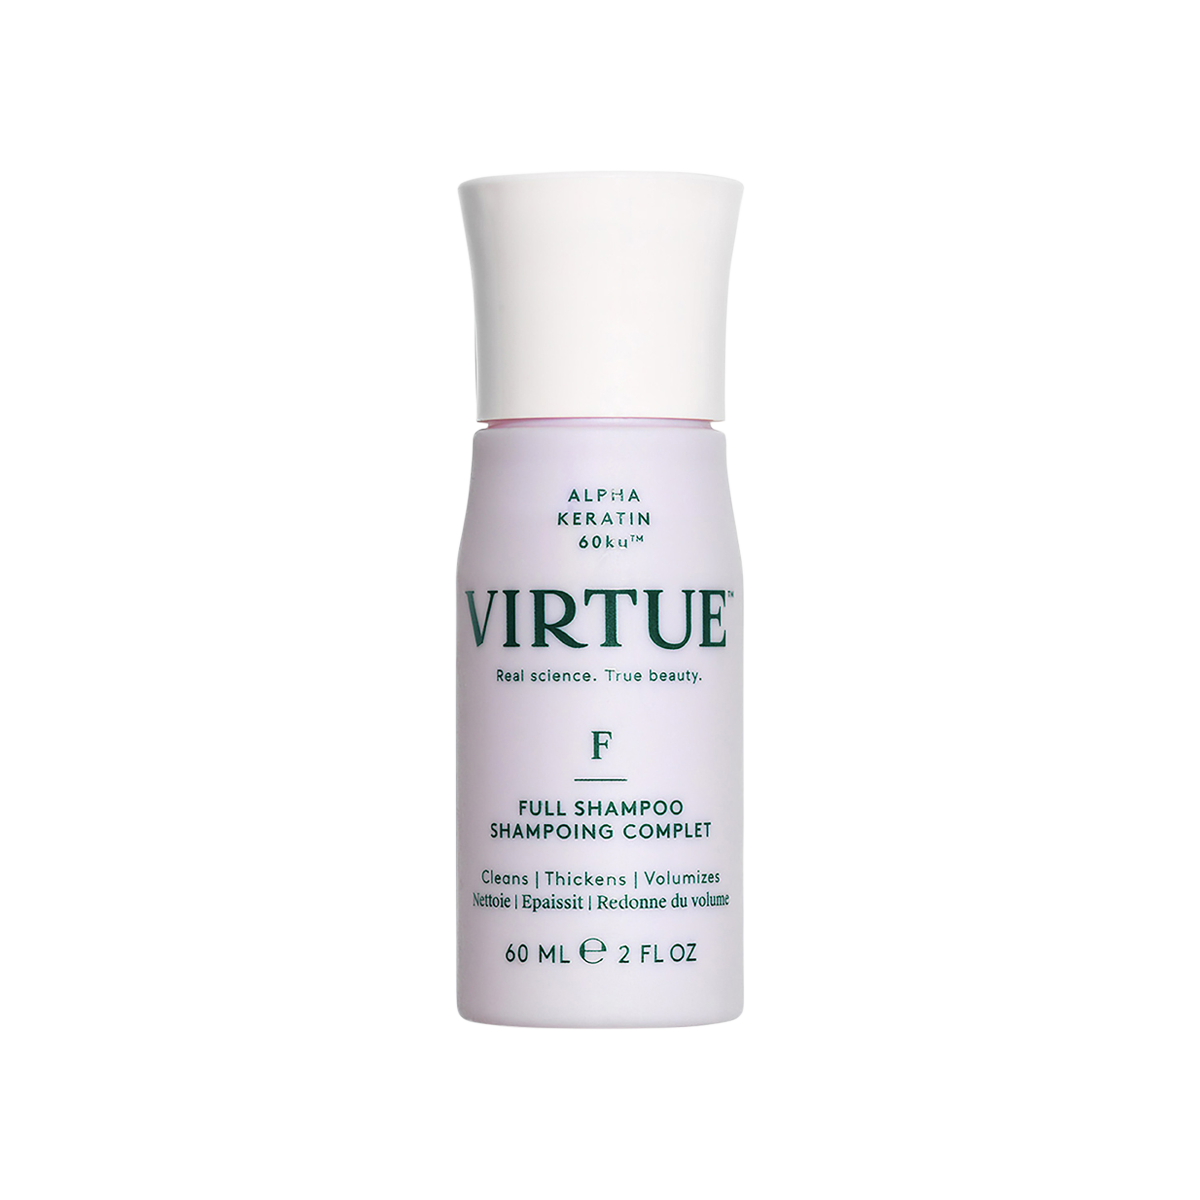 Virtue - Full Shampoo Travel Size